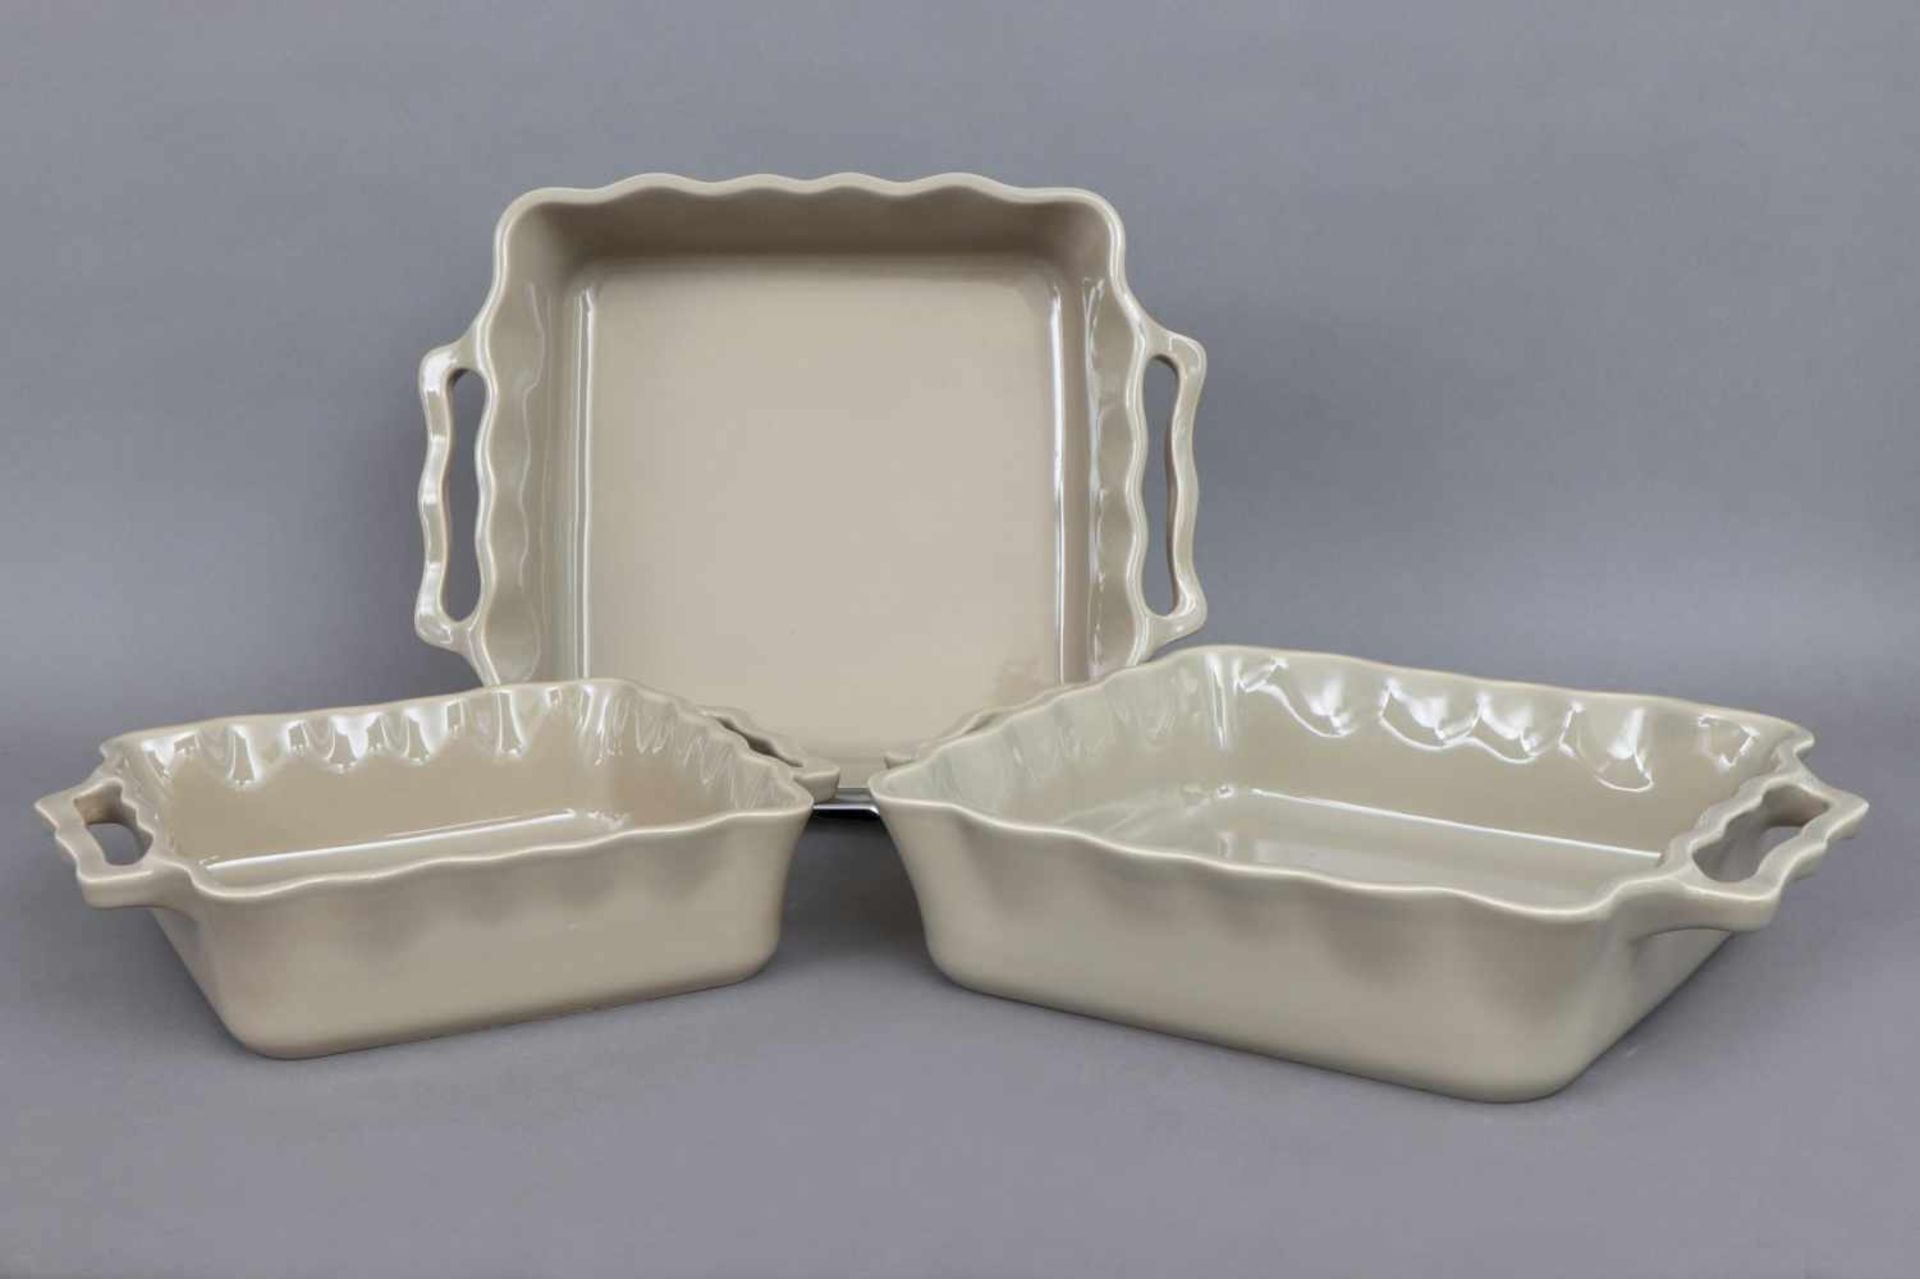 3 APPOLIA Keramik Ofenformen greige glasierte, eckige Schalen mit leicht welligem Rand und